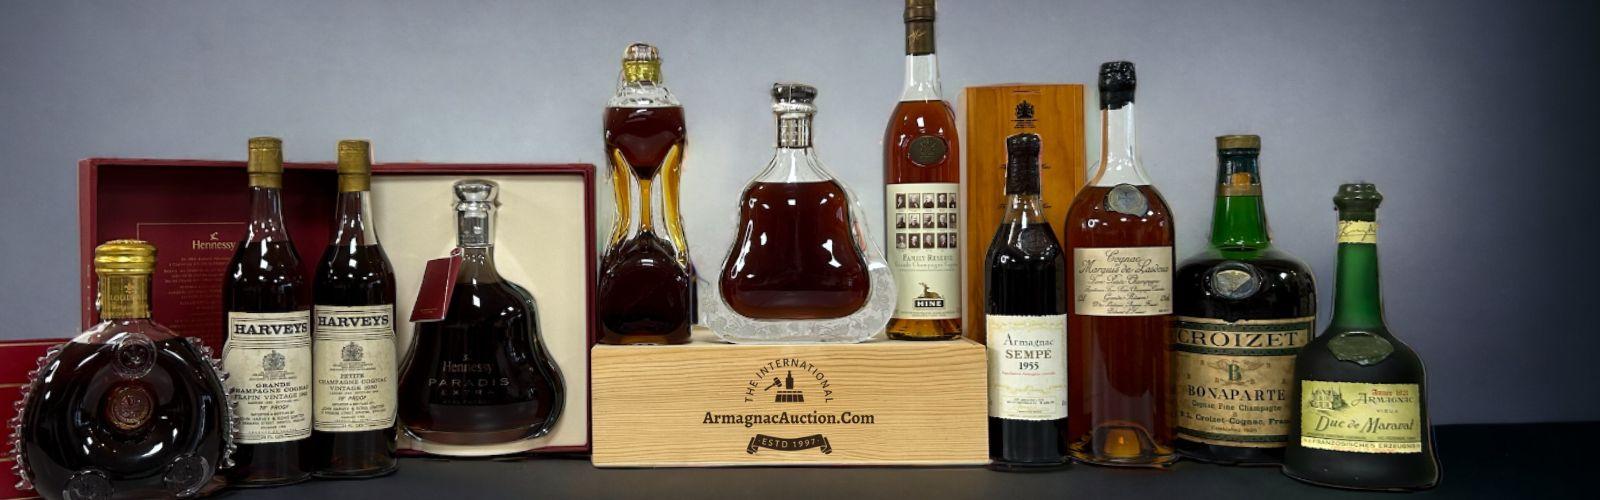 Armagnac Auction